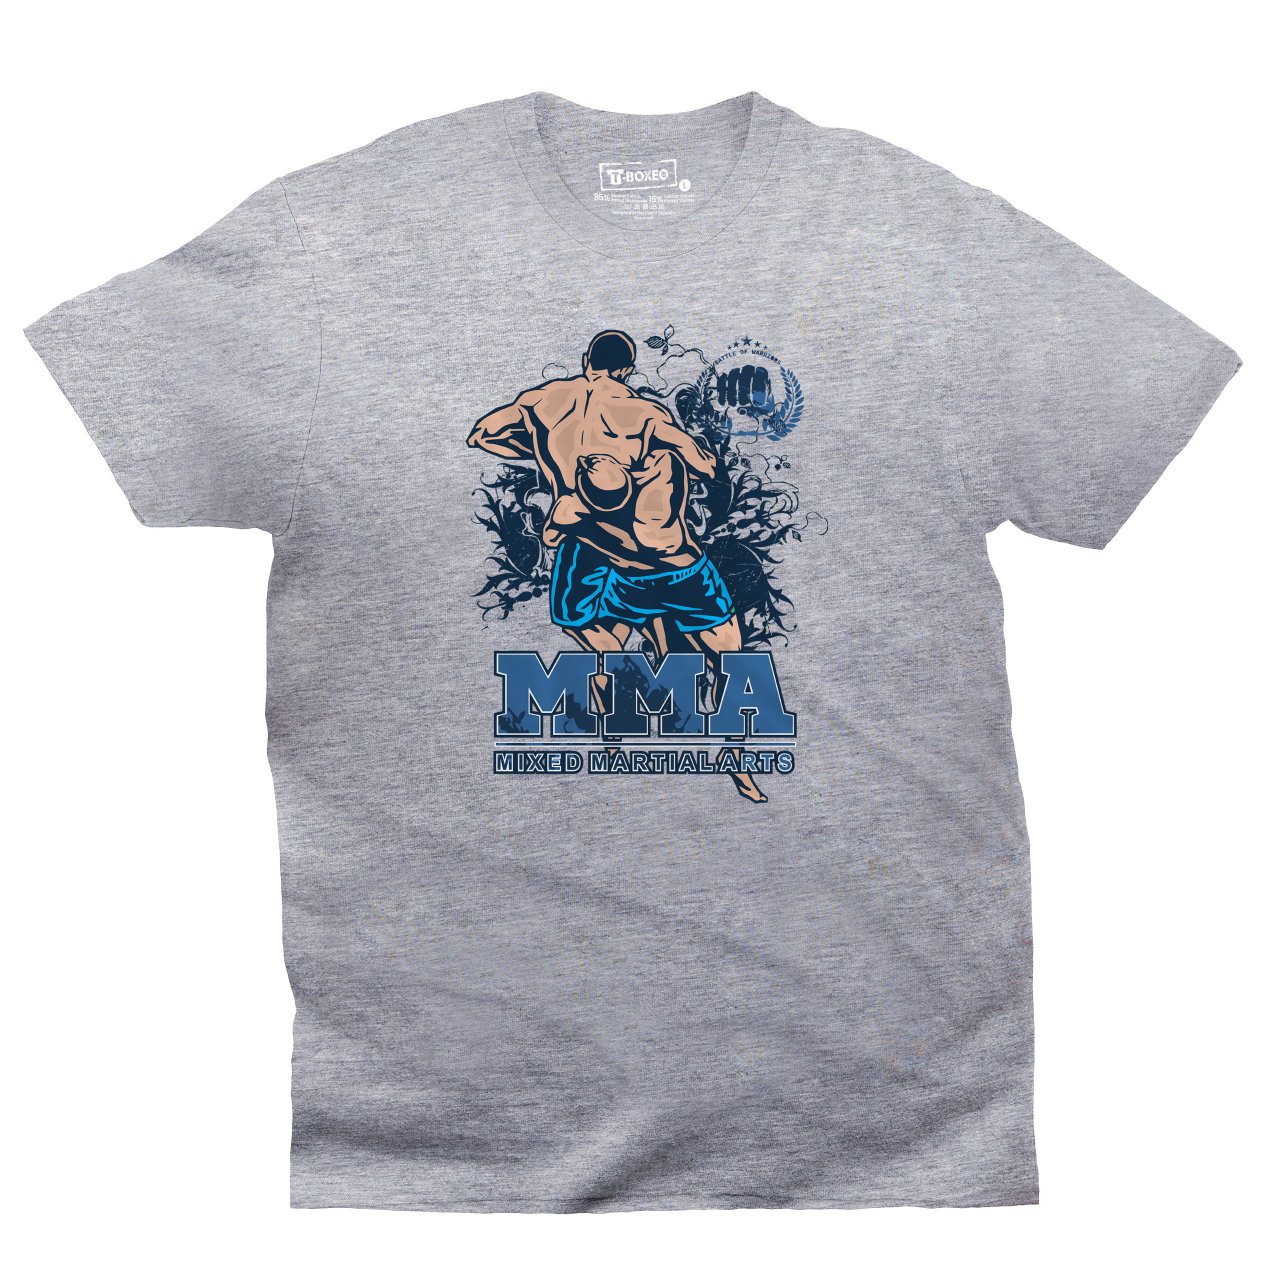 Pánské tričko s potiskem “MMA, Mixed Martial Arts"